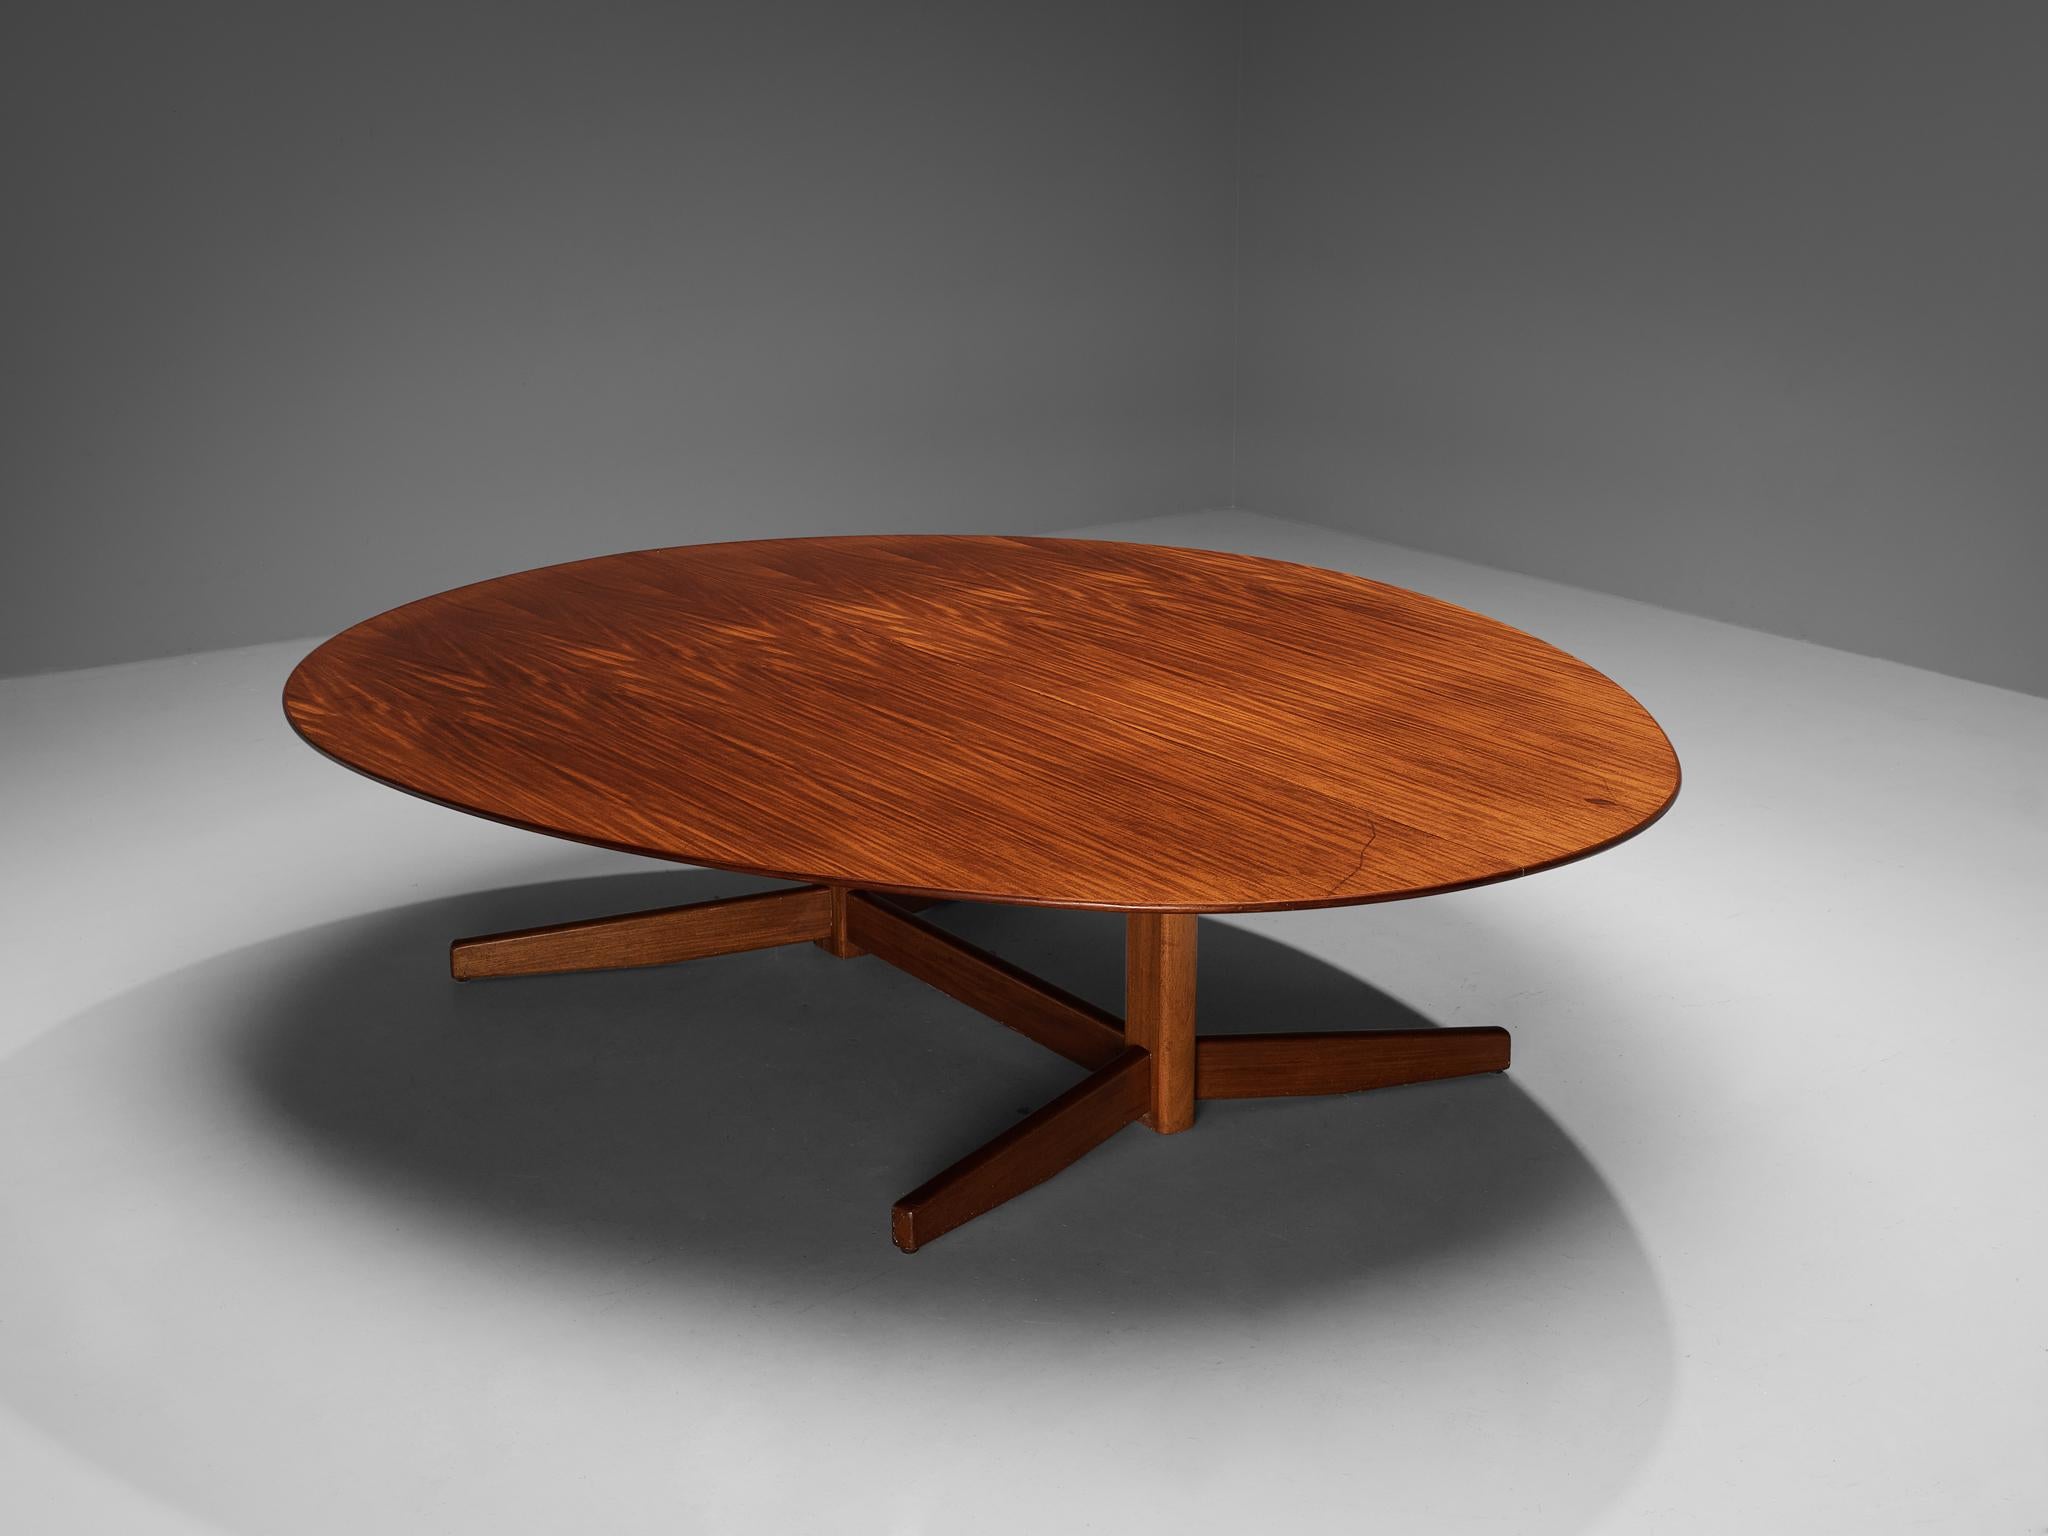 Großer Ess- oder Konferenztisch, Mahagoni, Dänemark, 1970er Jahre

Schöner großer Esstisch in Oval- oder Eiform, hergestellt in Dänemark in den 1970er Jahren. Dieser Tisch ist aus Mahagoniholz gefertigt, das eine strahlende Form hat und mit